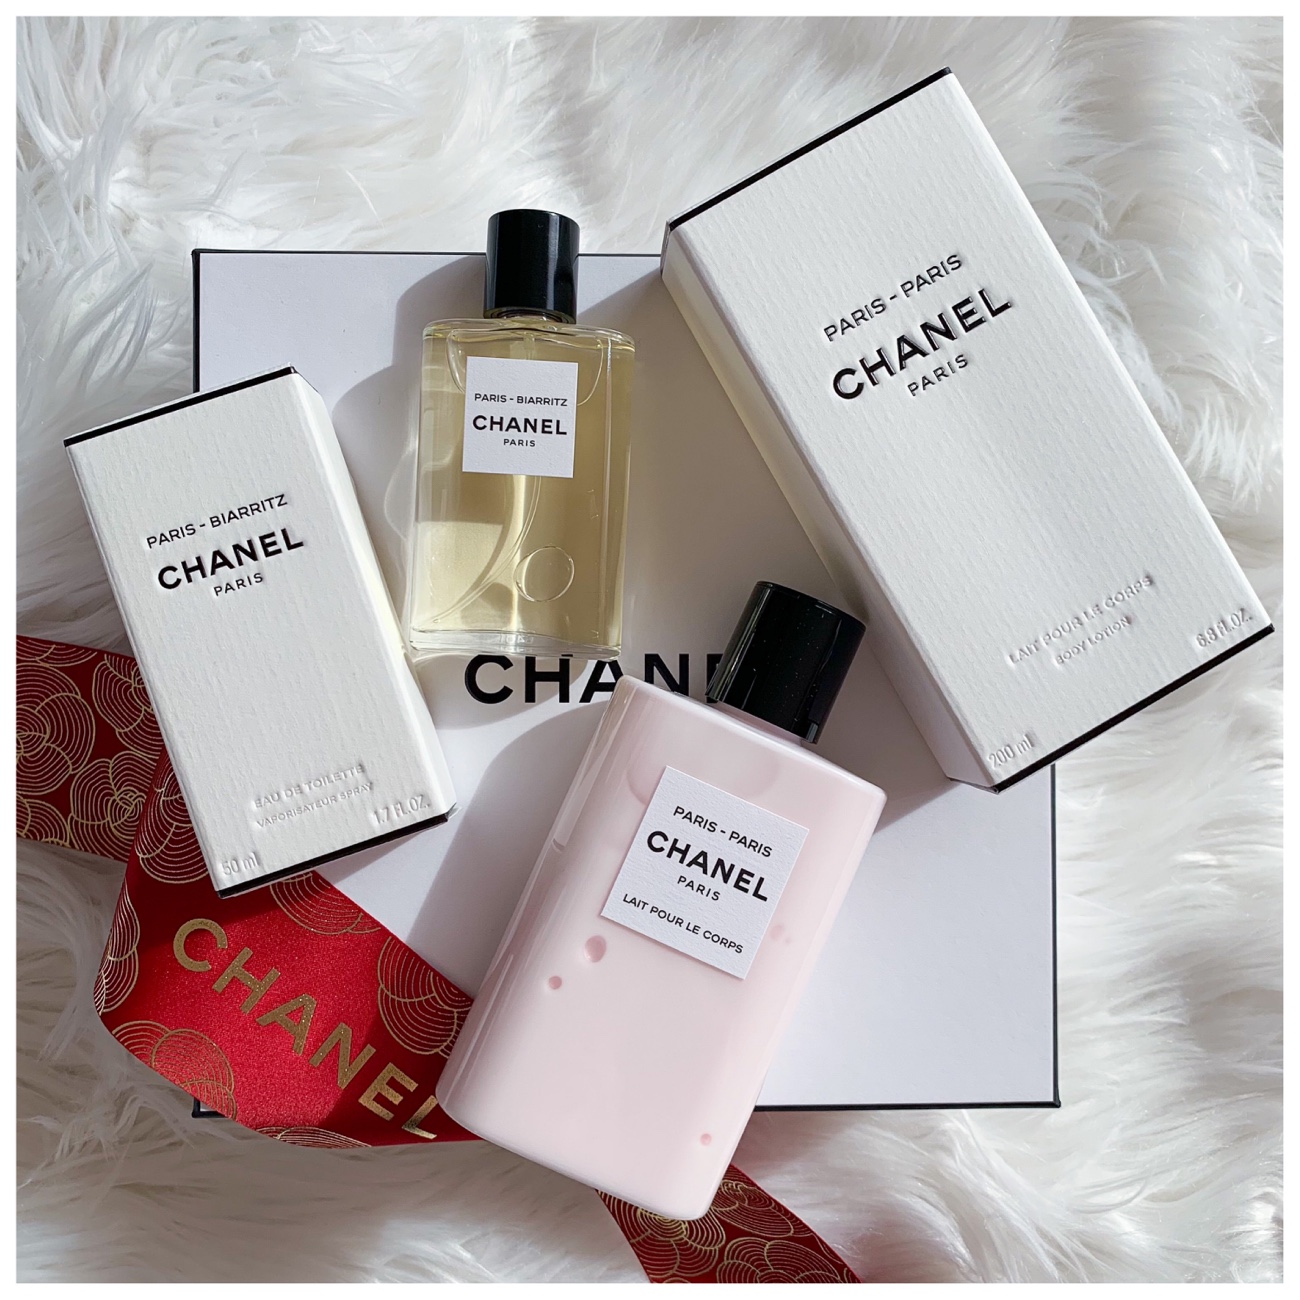 CHANEL PARIS - PARIS Perfume Review - Les Eaux de CHANEL Fragrance - EDT 